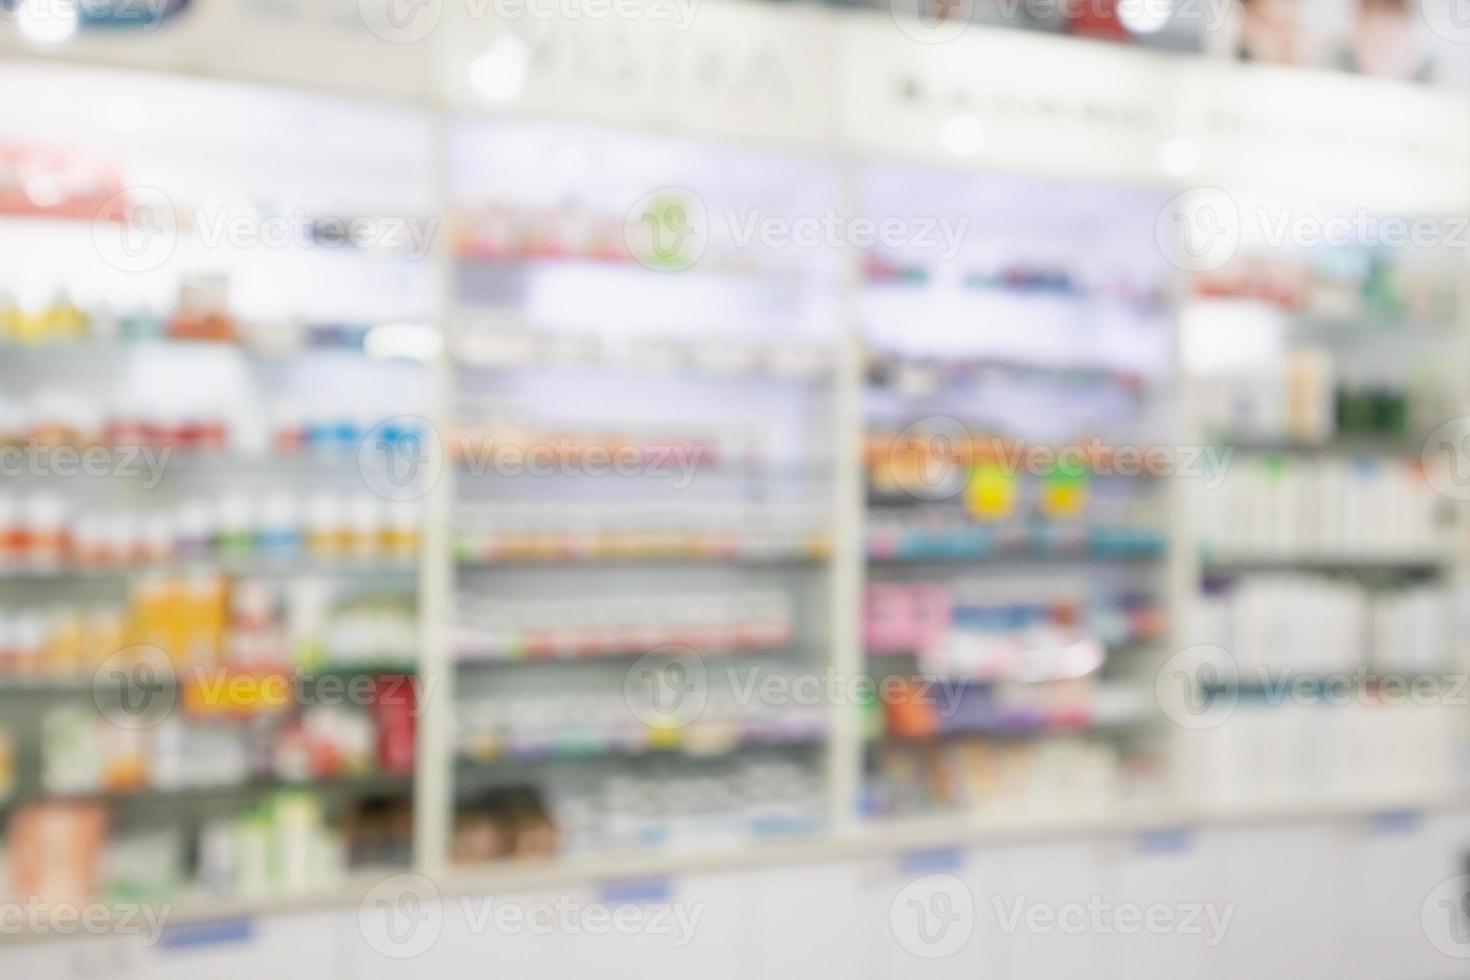 apotheke drogerie verwischen abstrakten hintergrund mit medizin- und vitaminprodukt in den regalen foto